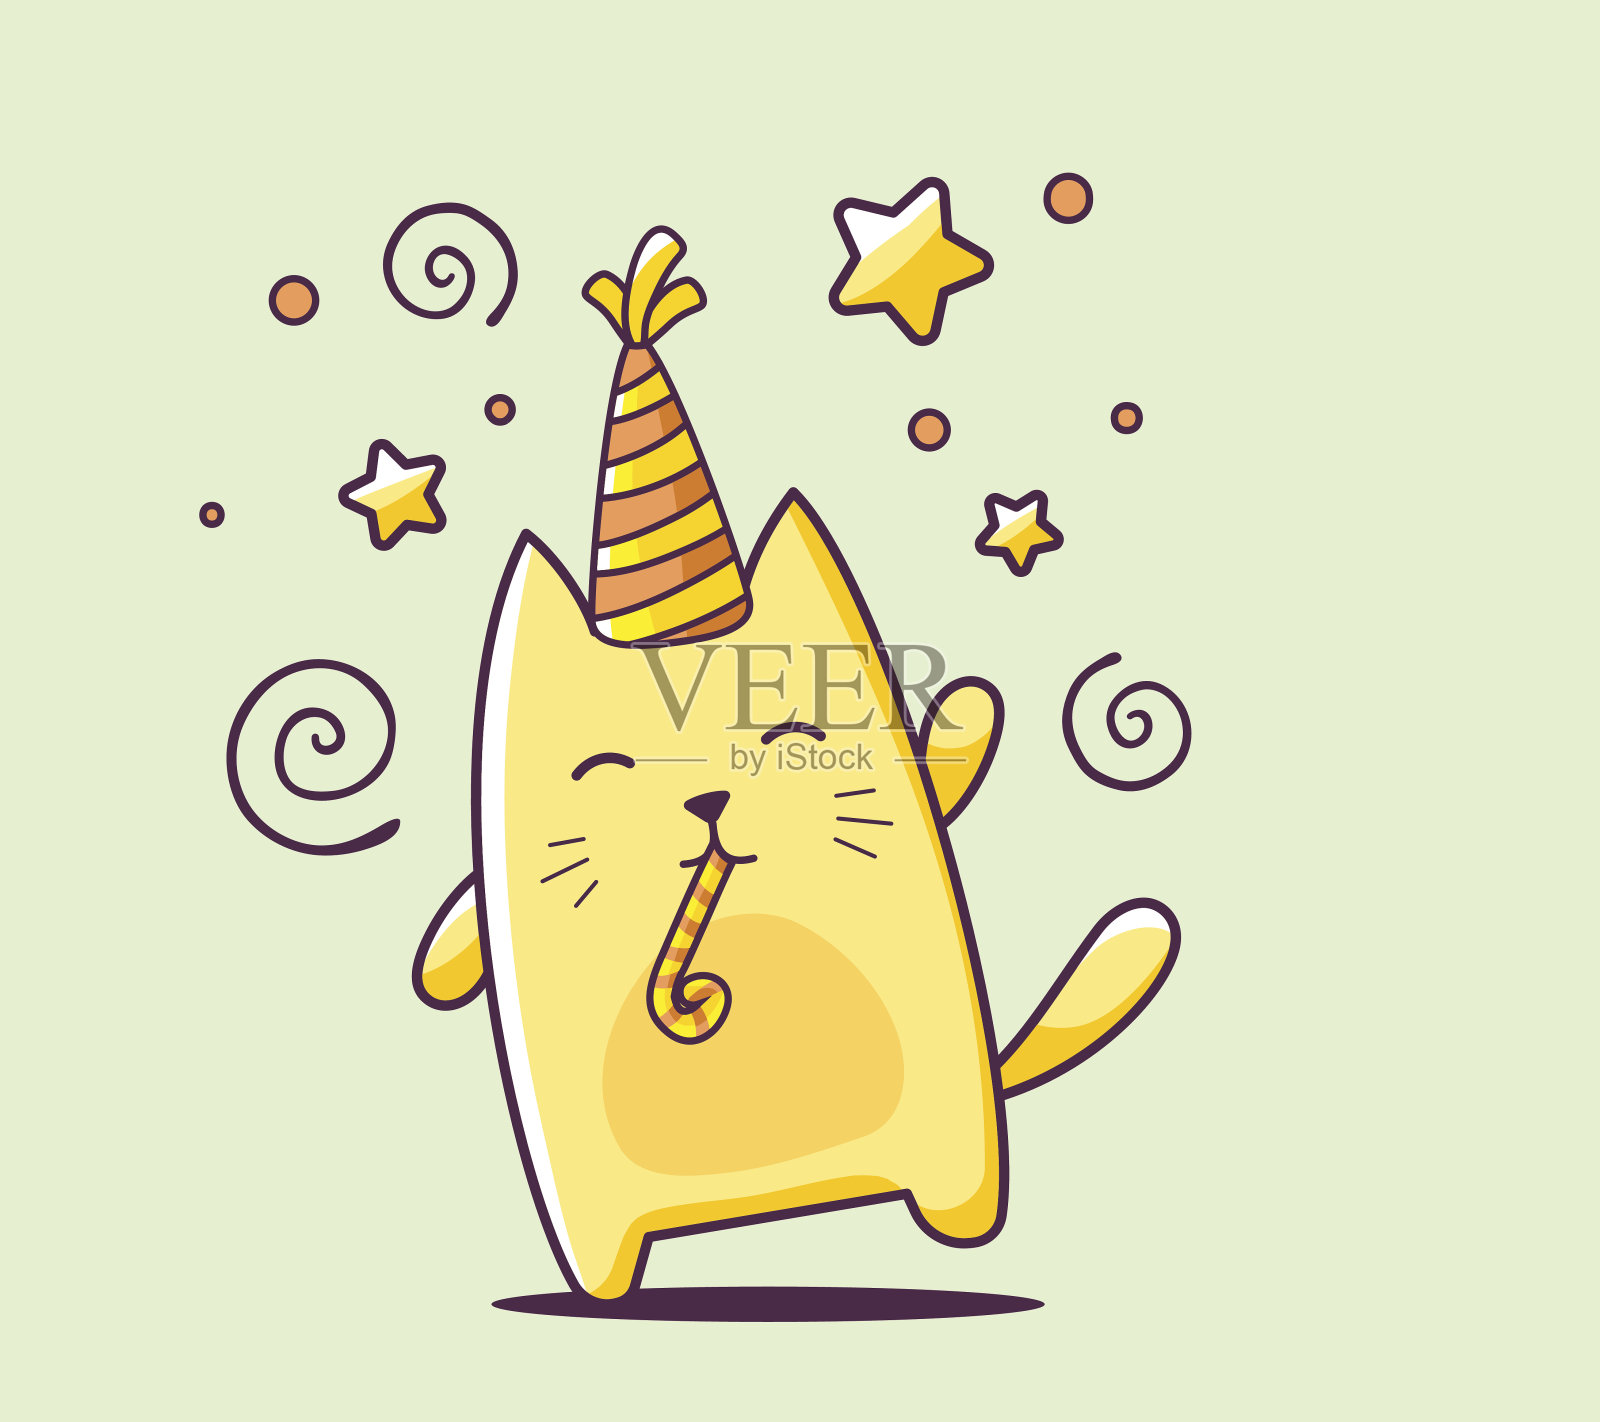 矢量插图的颜色快乐的性格猫与帽子设计元素图片